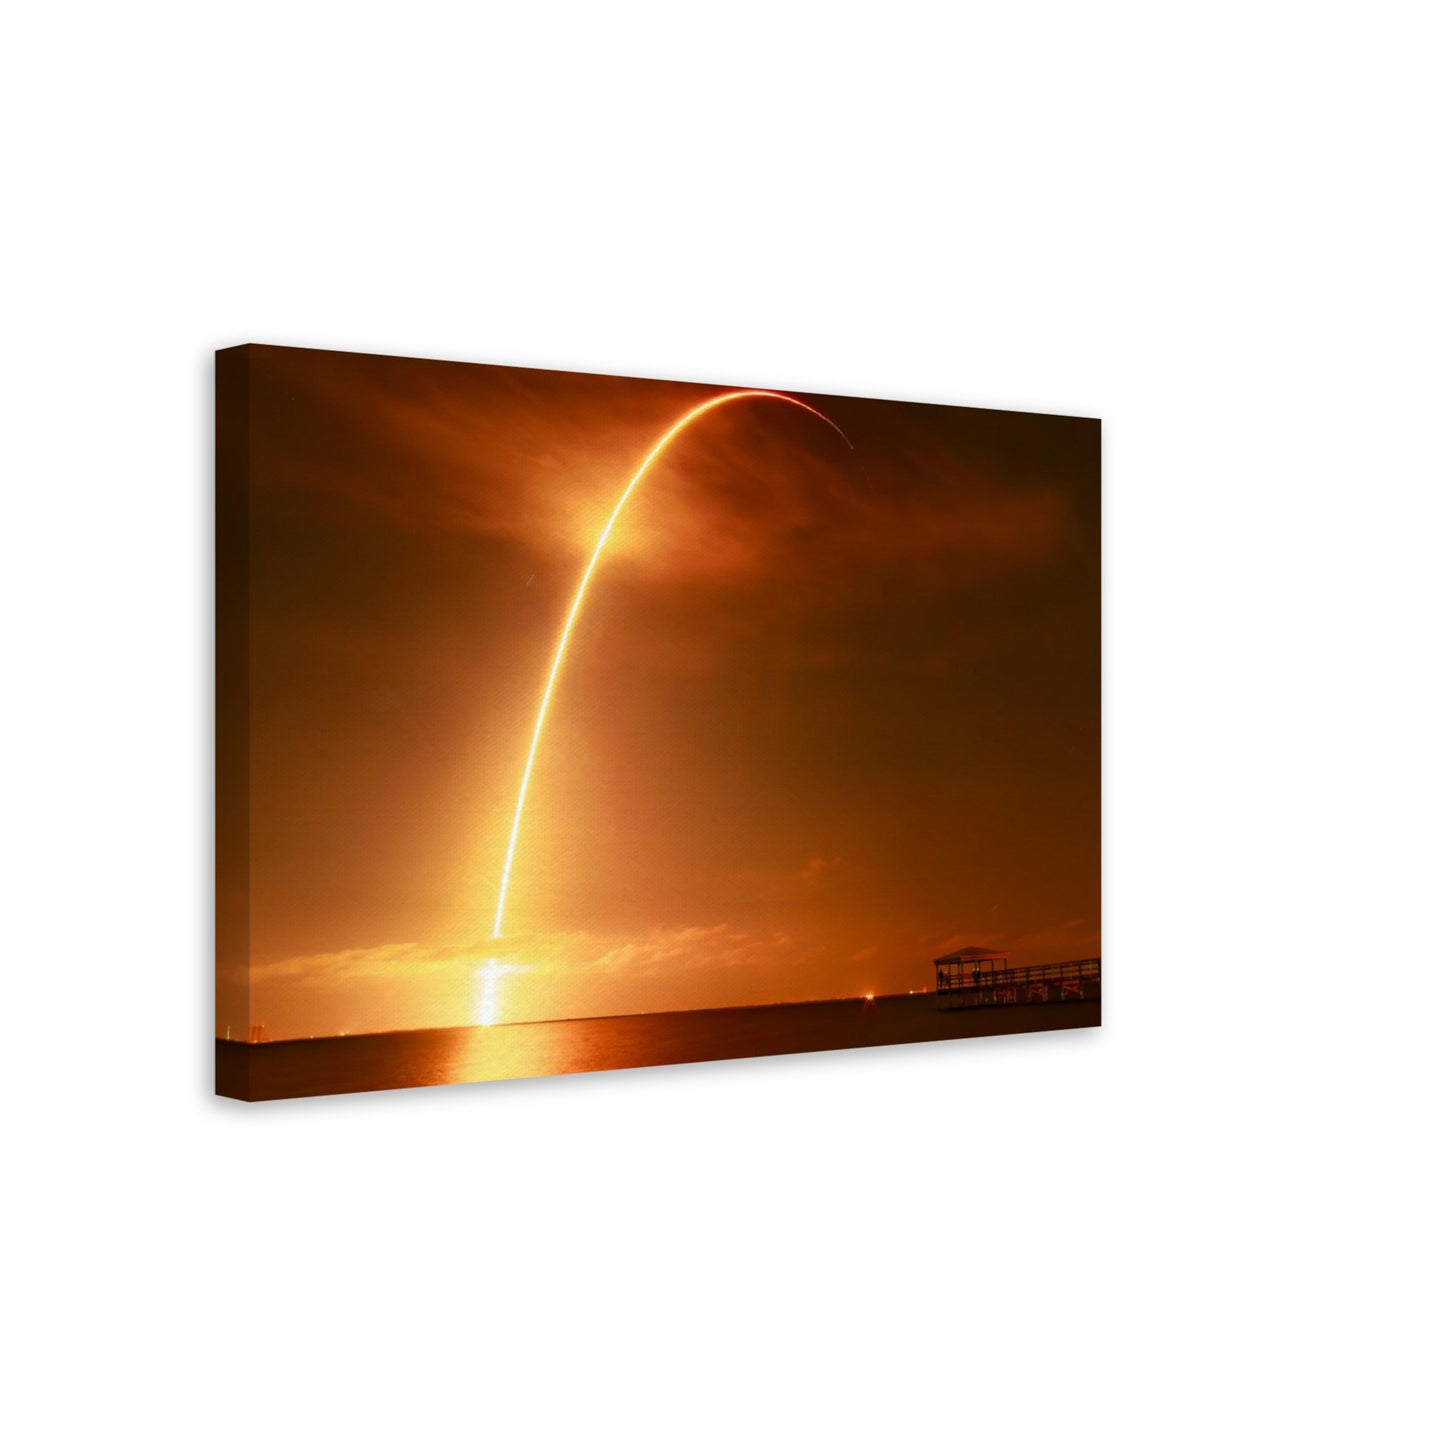 Falcon 9 Launch  -  Canvas